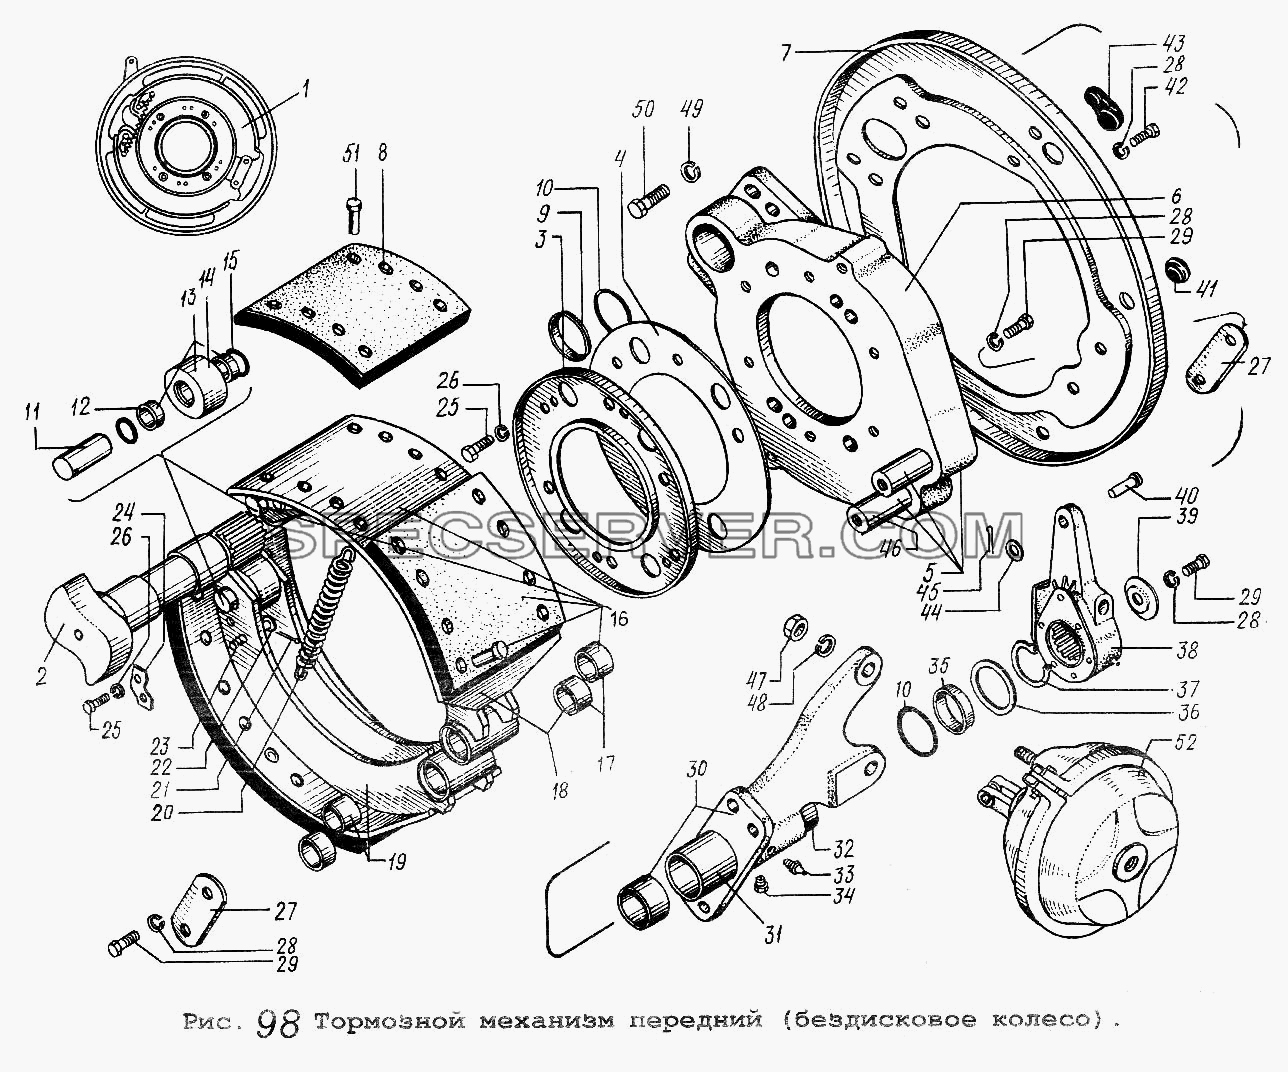 Тормозной механизм передний (бездисковое колесо) для МАЗ-5516 (список запасных частей)